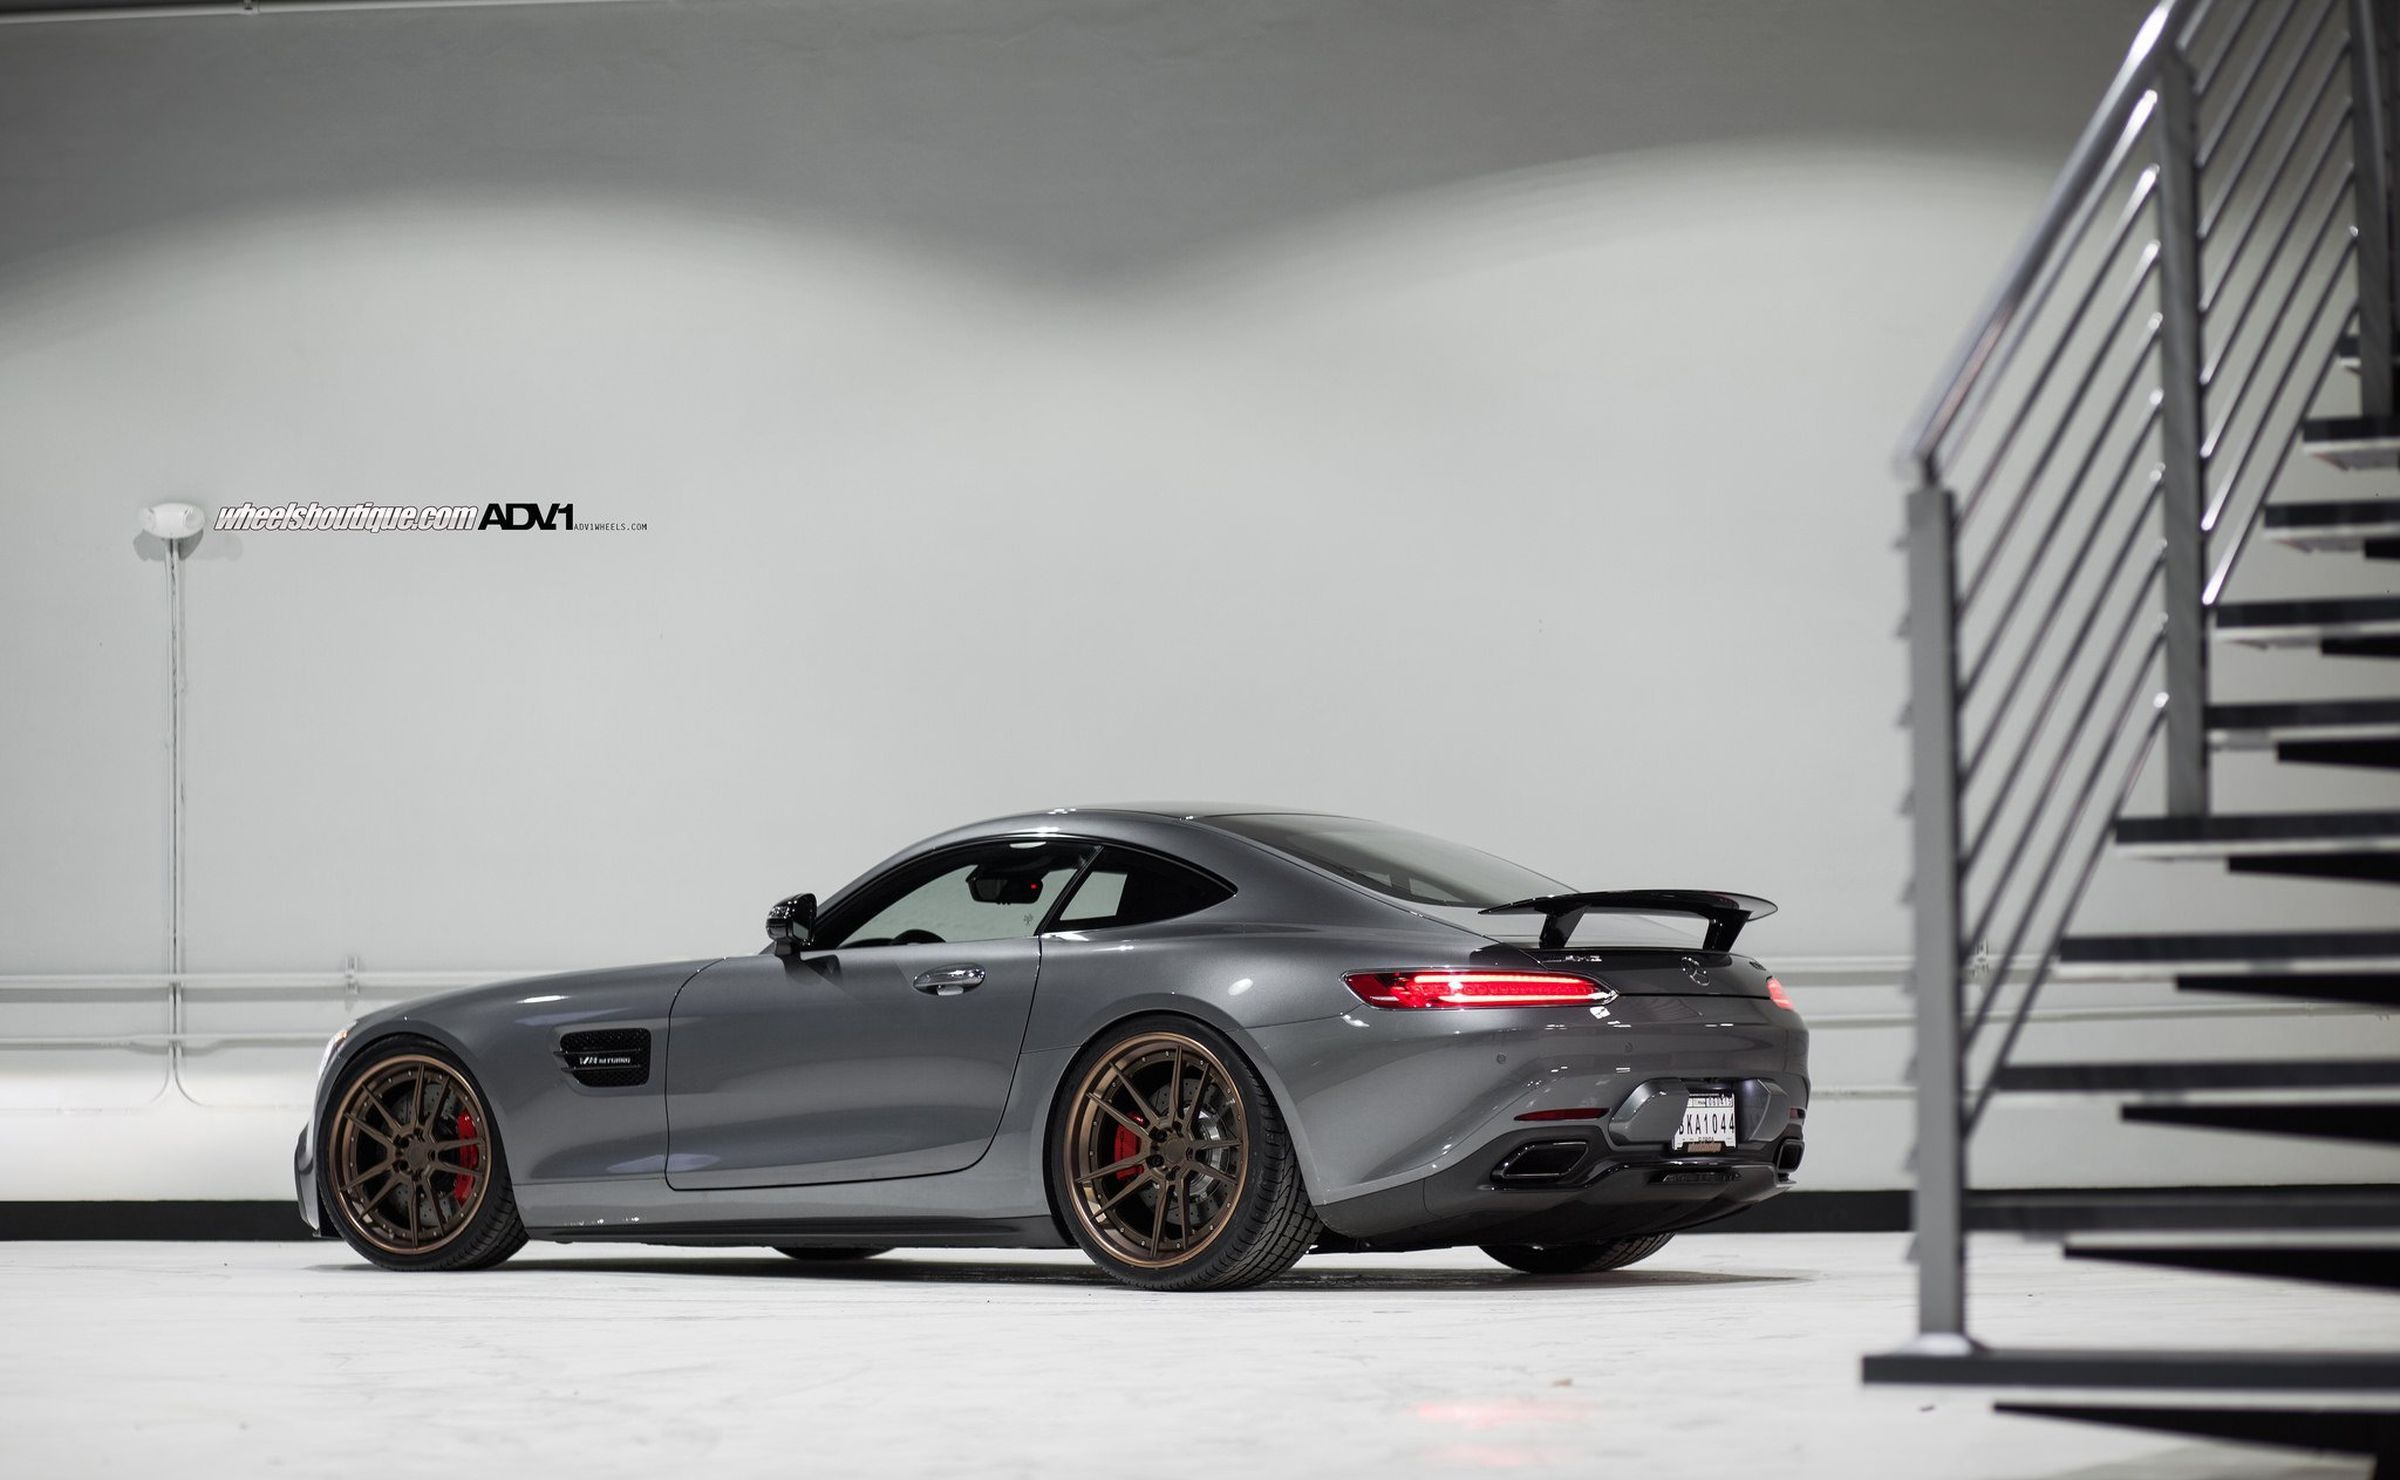 Mercedes Benz Wallpaper, Live Wallpapers, Hd Wallpaper, - Porsche 911 Gt2 , HD Wallpaper & Backgrounds